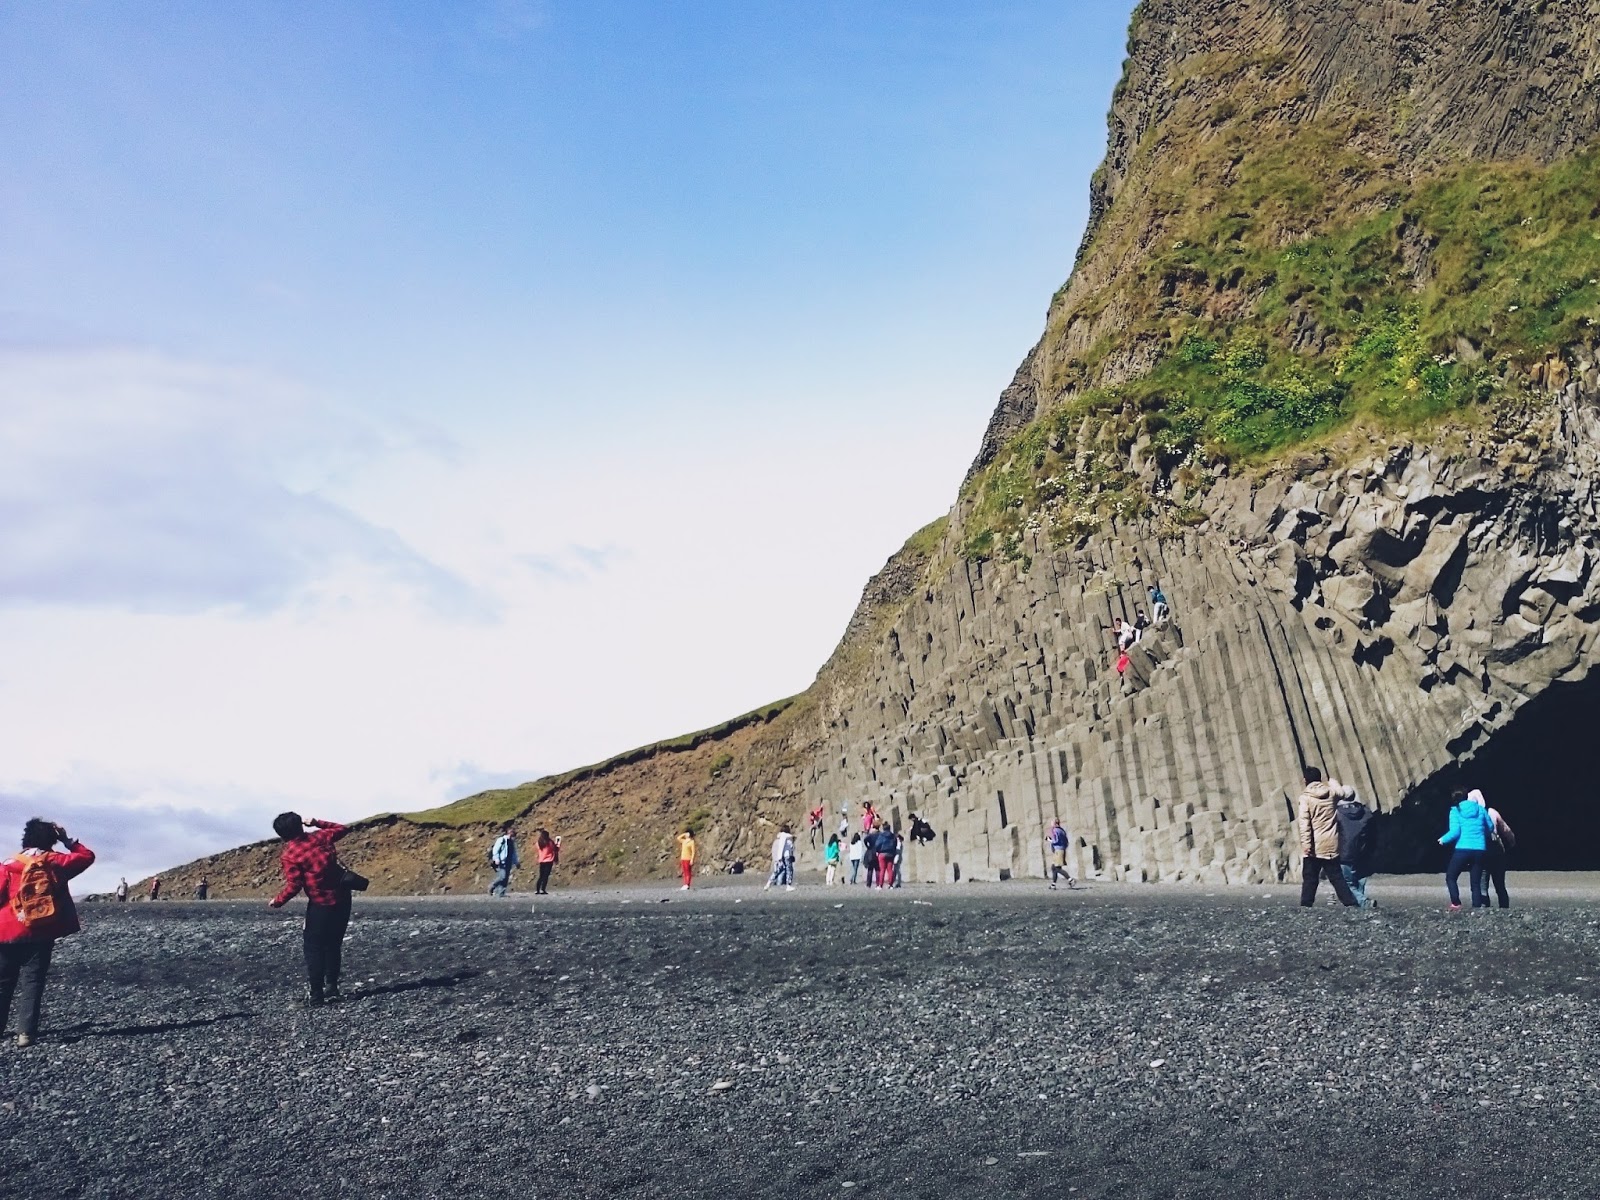 Czarna plaża, Reynisfjara, black beach, Vik, Islandia, skały, turyści, panidorcia, Pani Dorcia, bazalt, kolumny bazaltowe